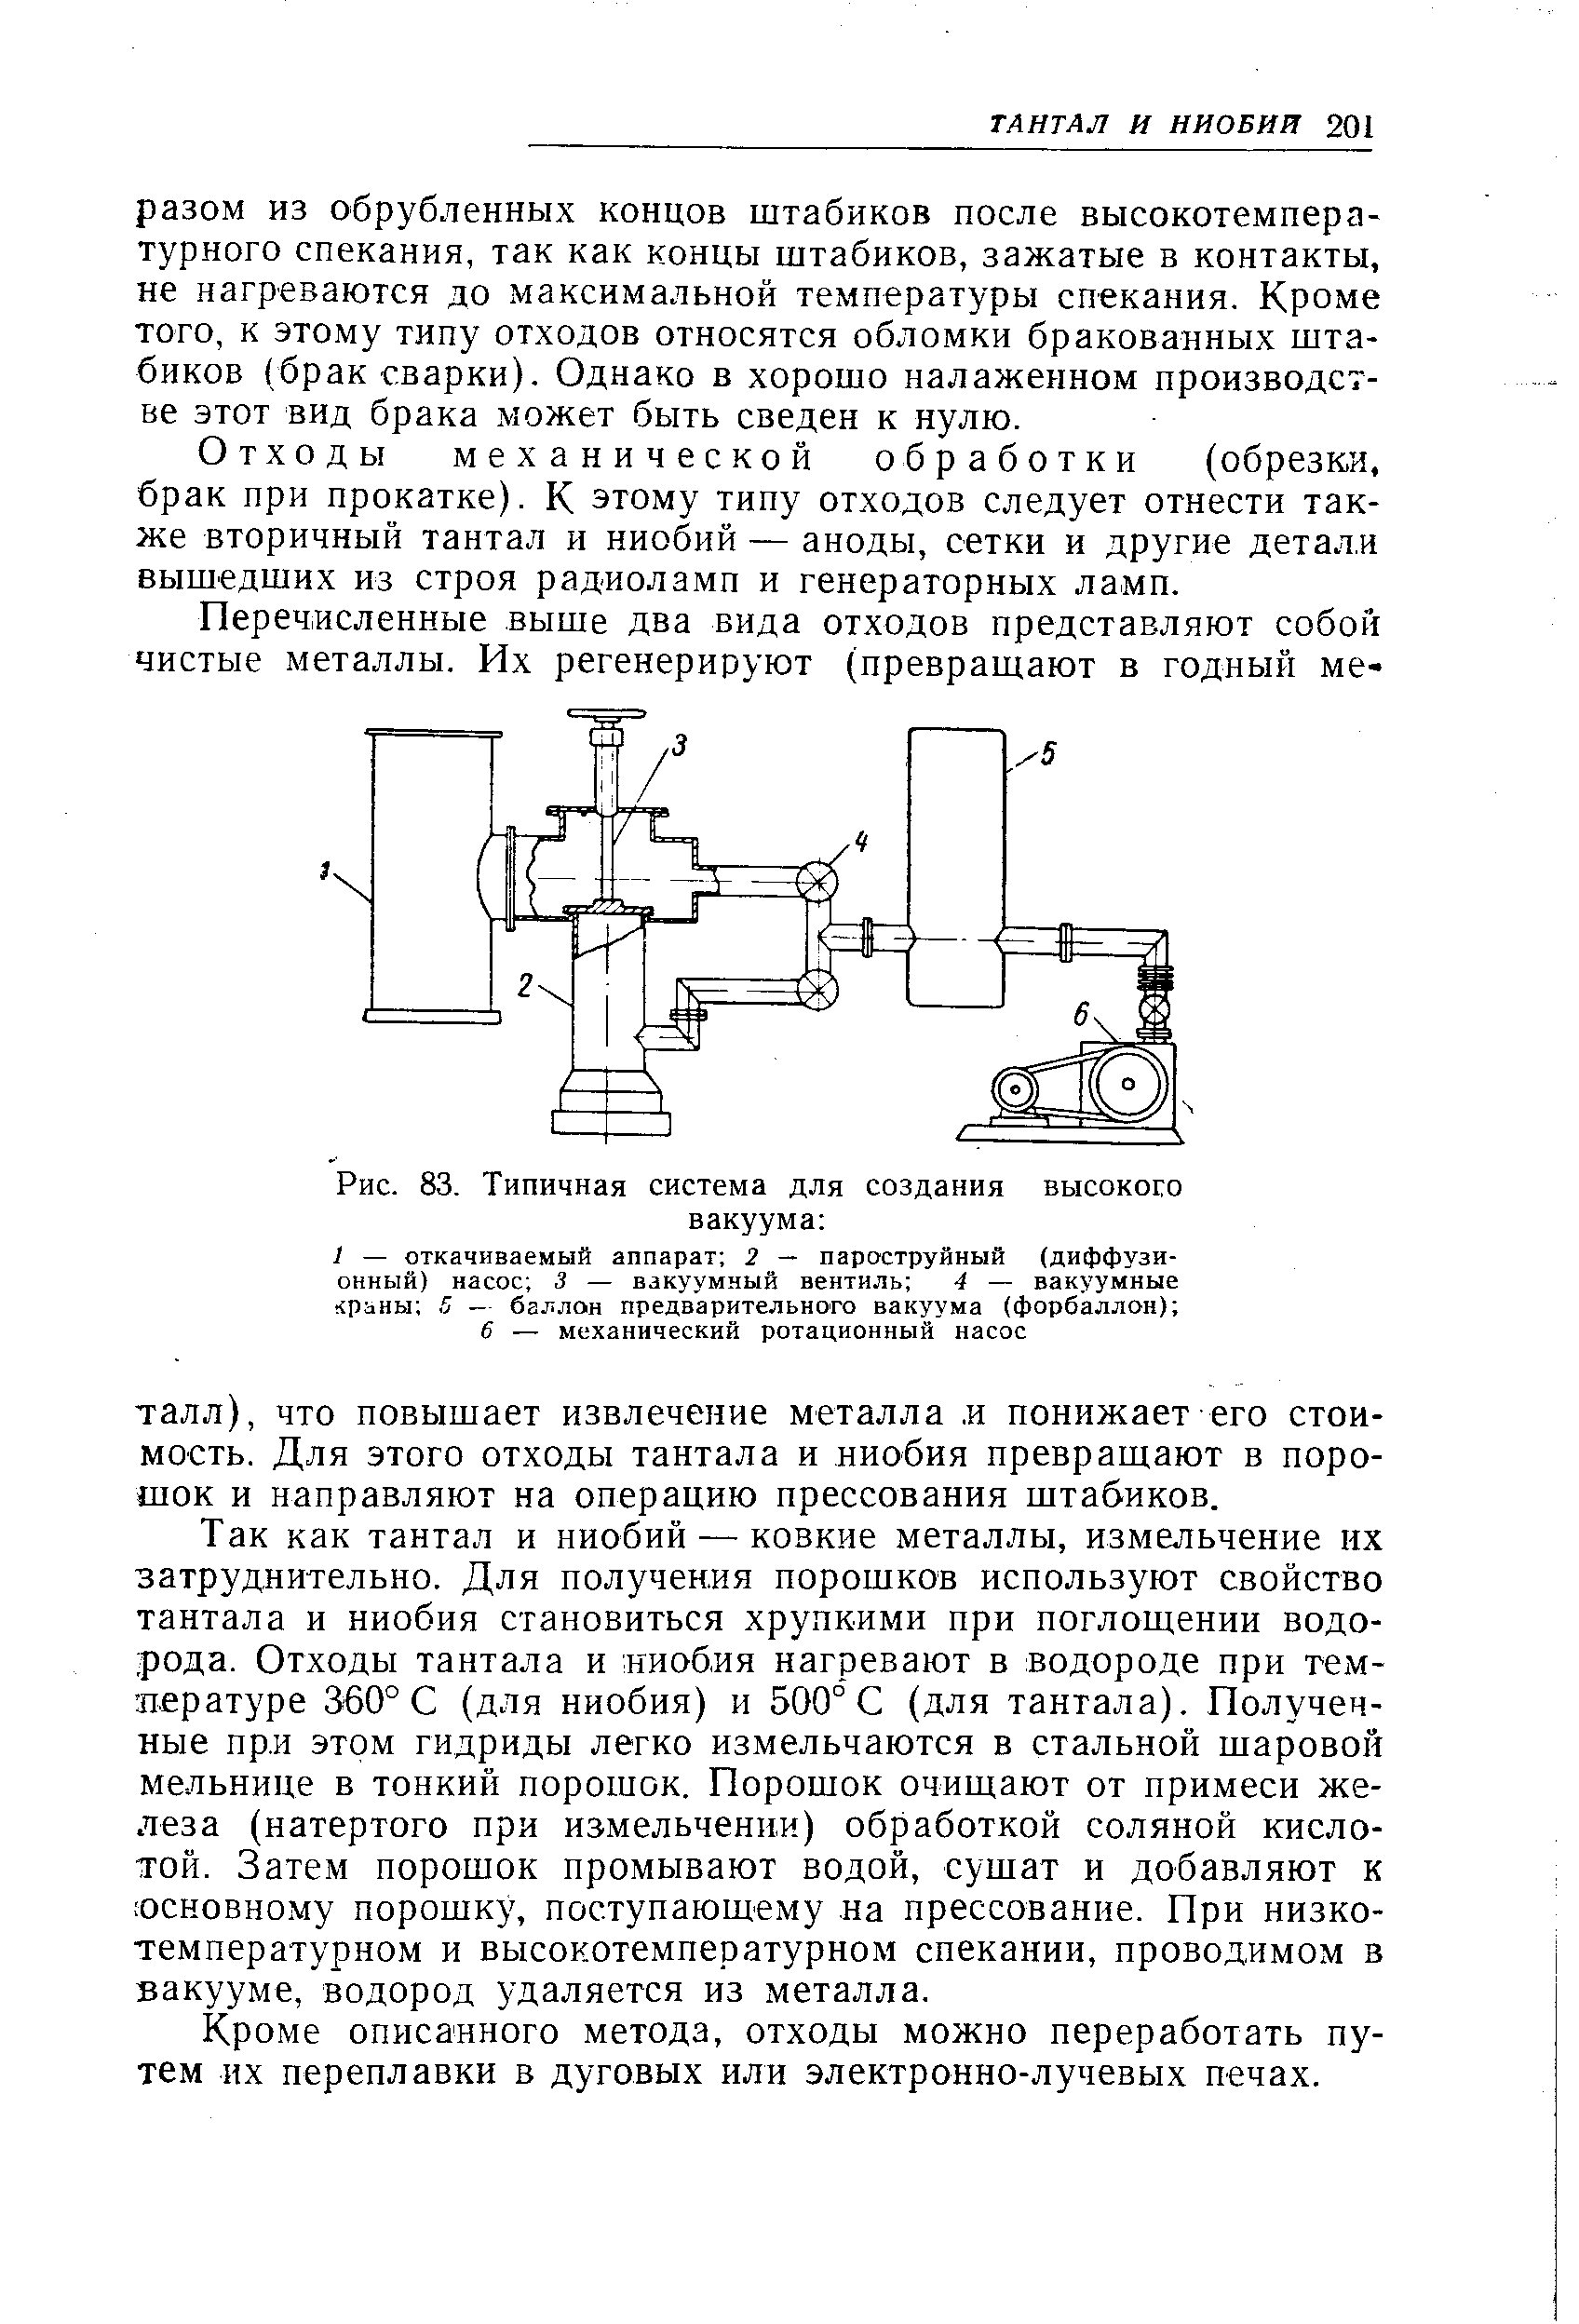 Рис. 83. Типичная система для создания высокого вакуума 
